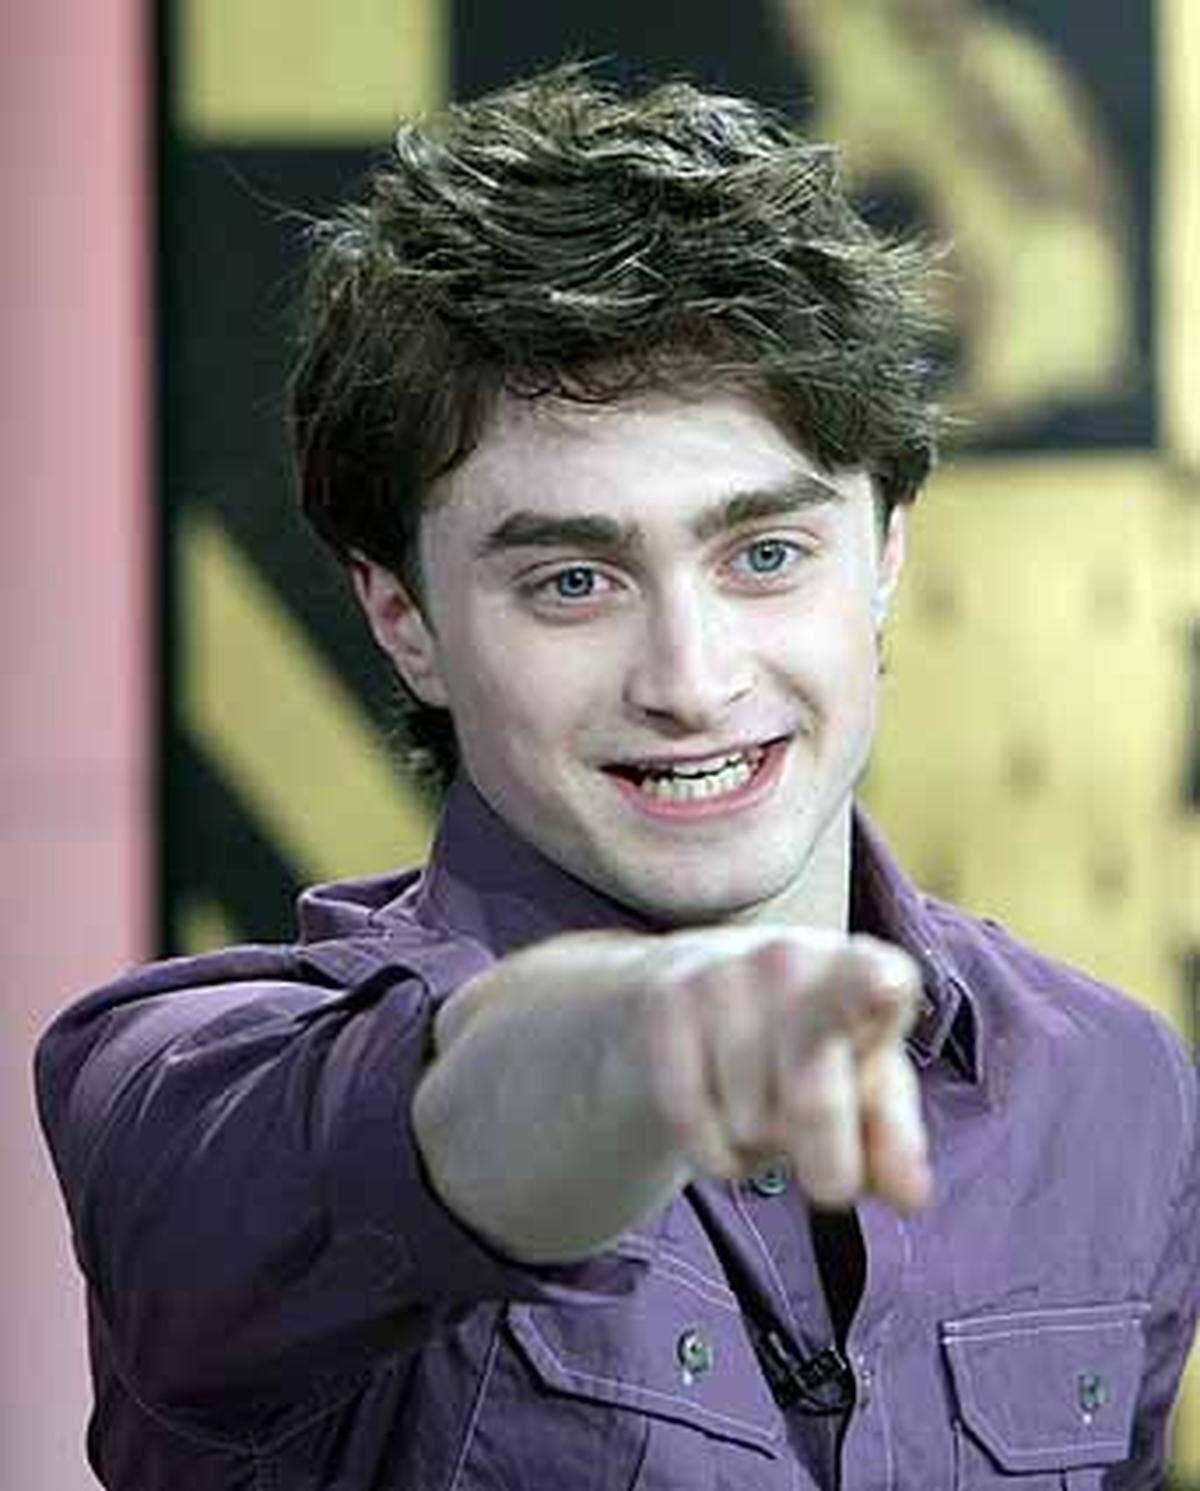 2007 folgt eine Hauptrolle in dem Film "December Boys", darin spielt Daniel Radcliffe einen Waisenjungen in Australien und erntet wieder Lob für seine schauspielerische Leistung.